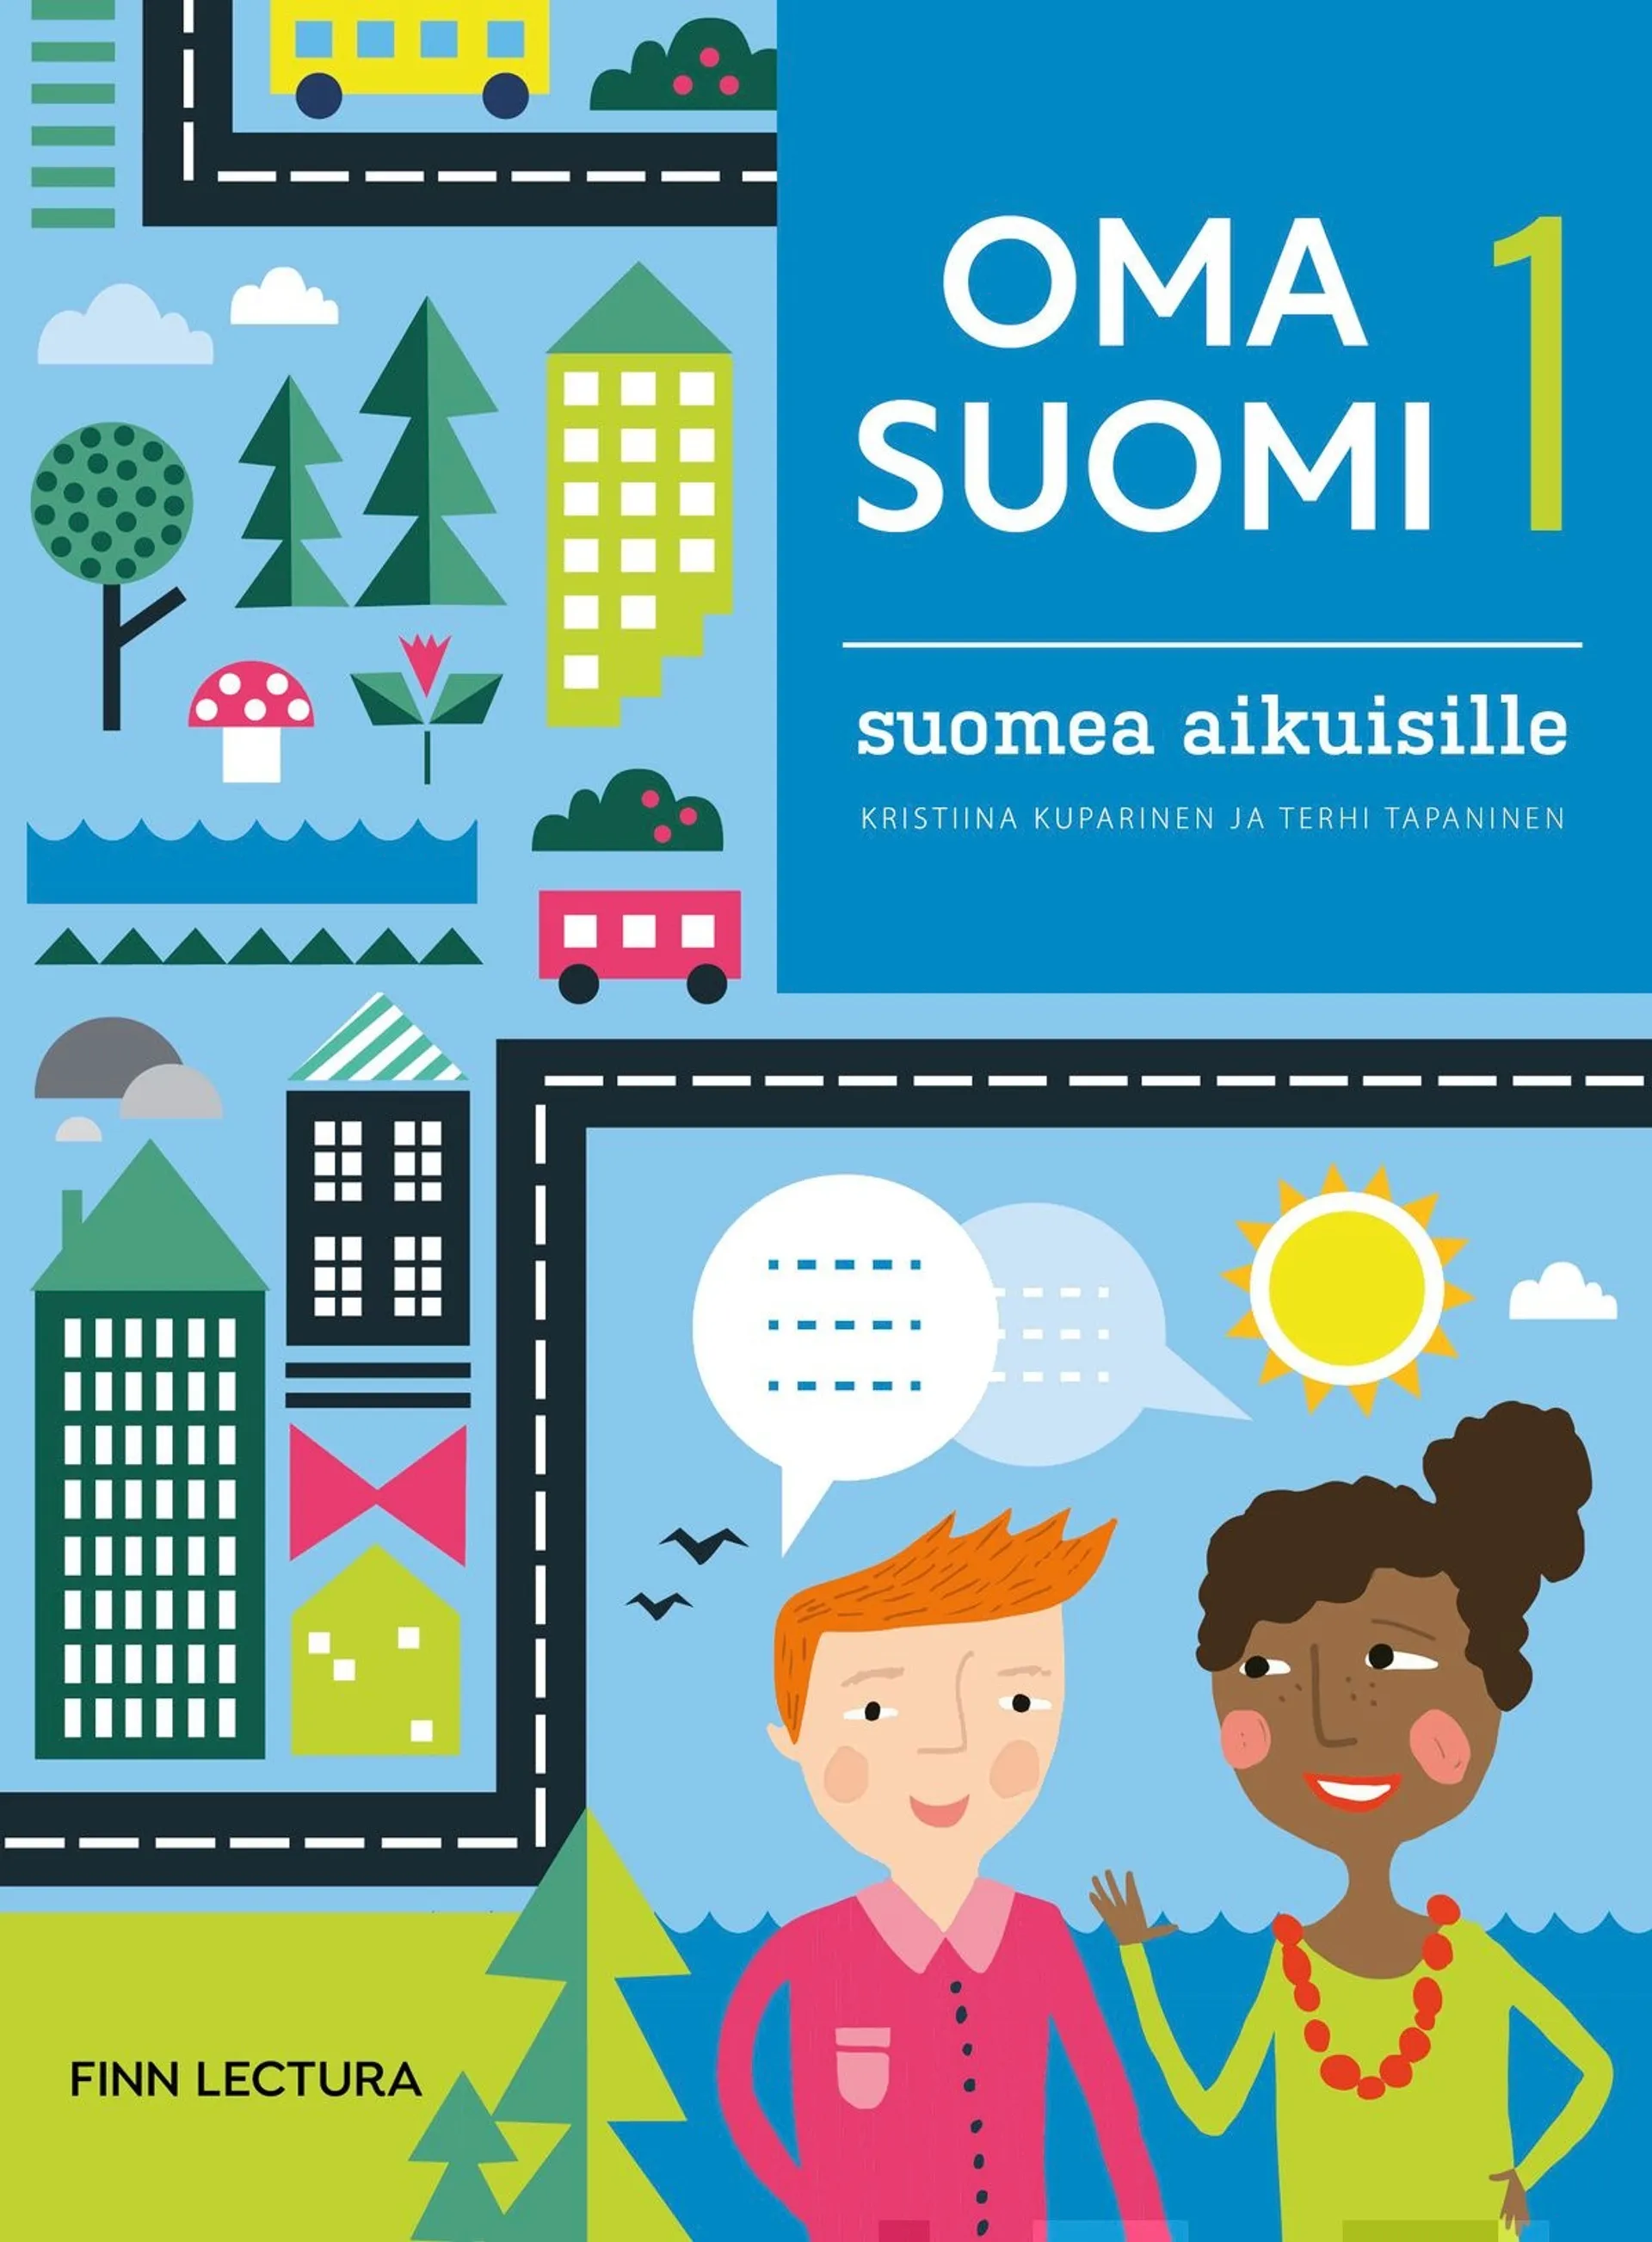 Kuparinen, Oma suomi 1 uudistettu - Suomea aikuisille